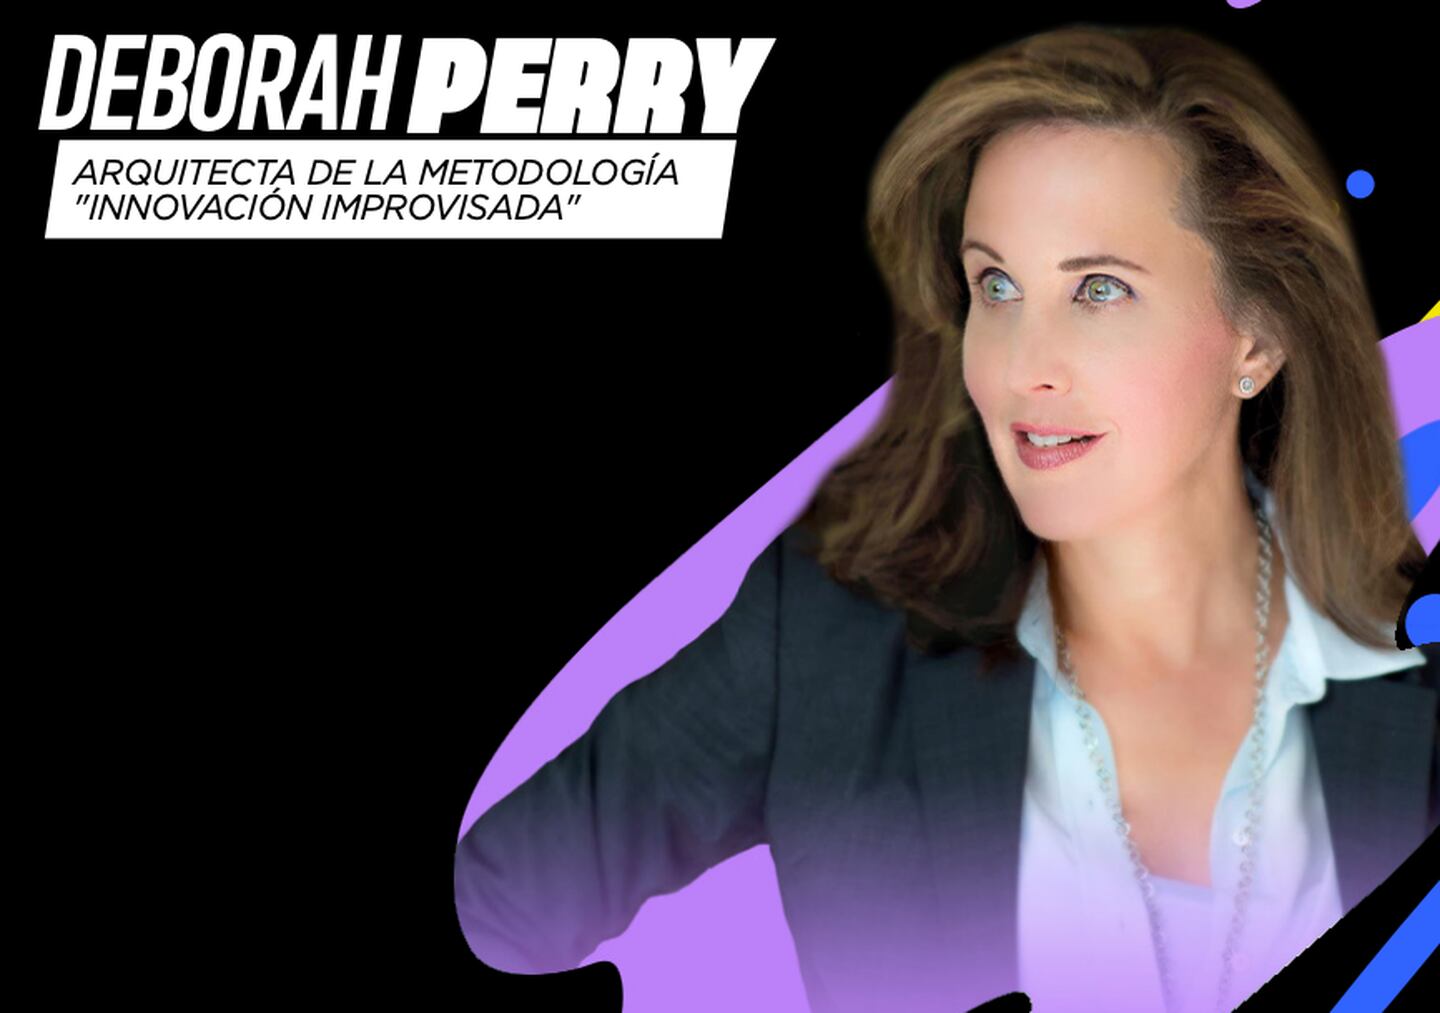 Deborah Perry